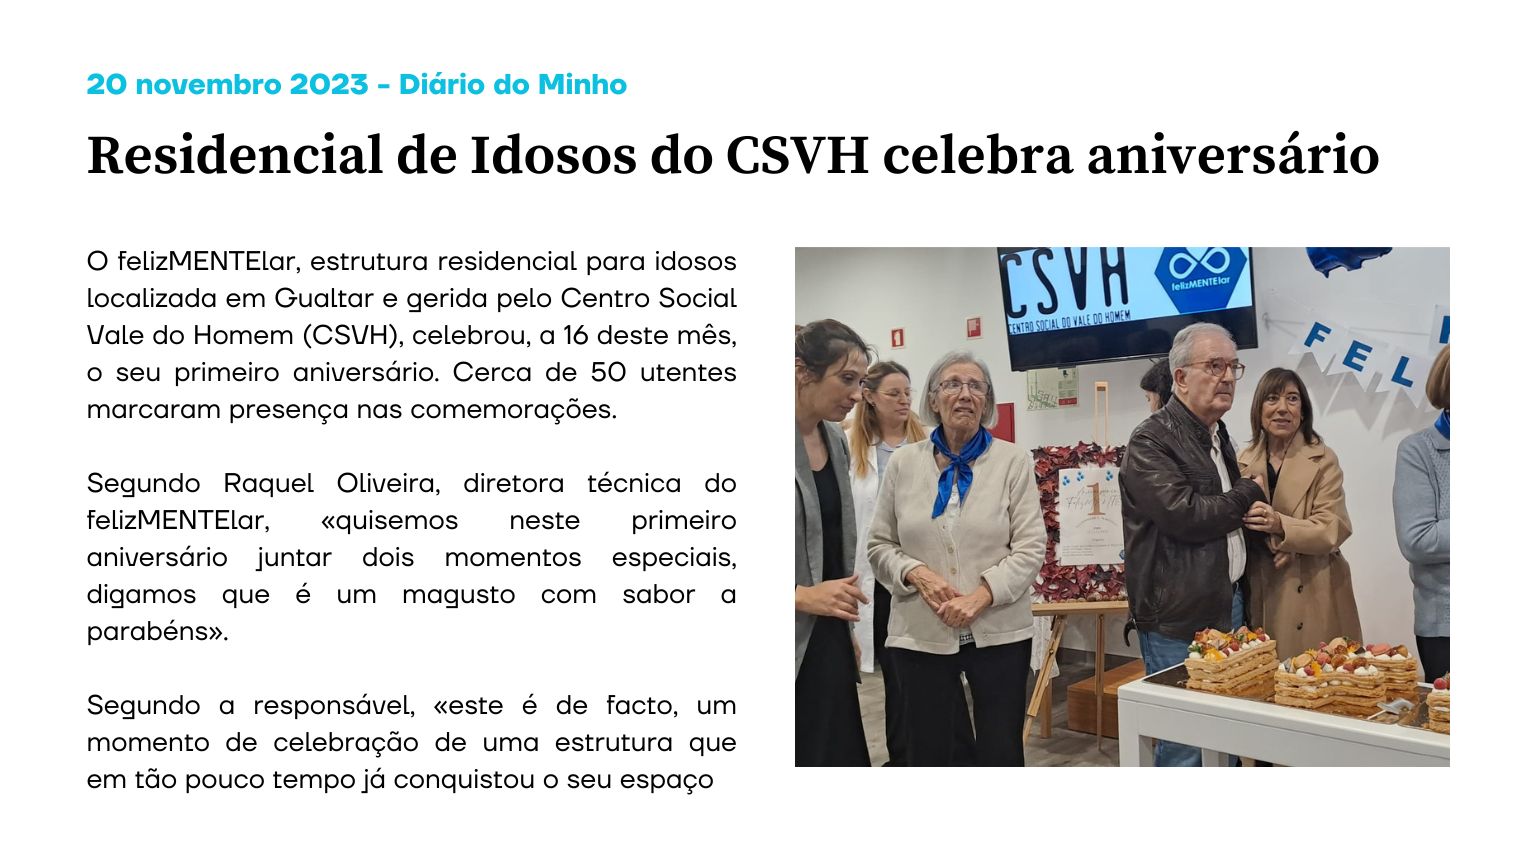 Residencial de Idosos do CSVH celebra aniversário